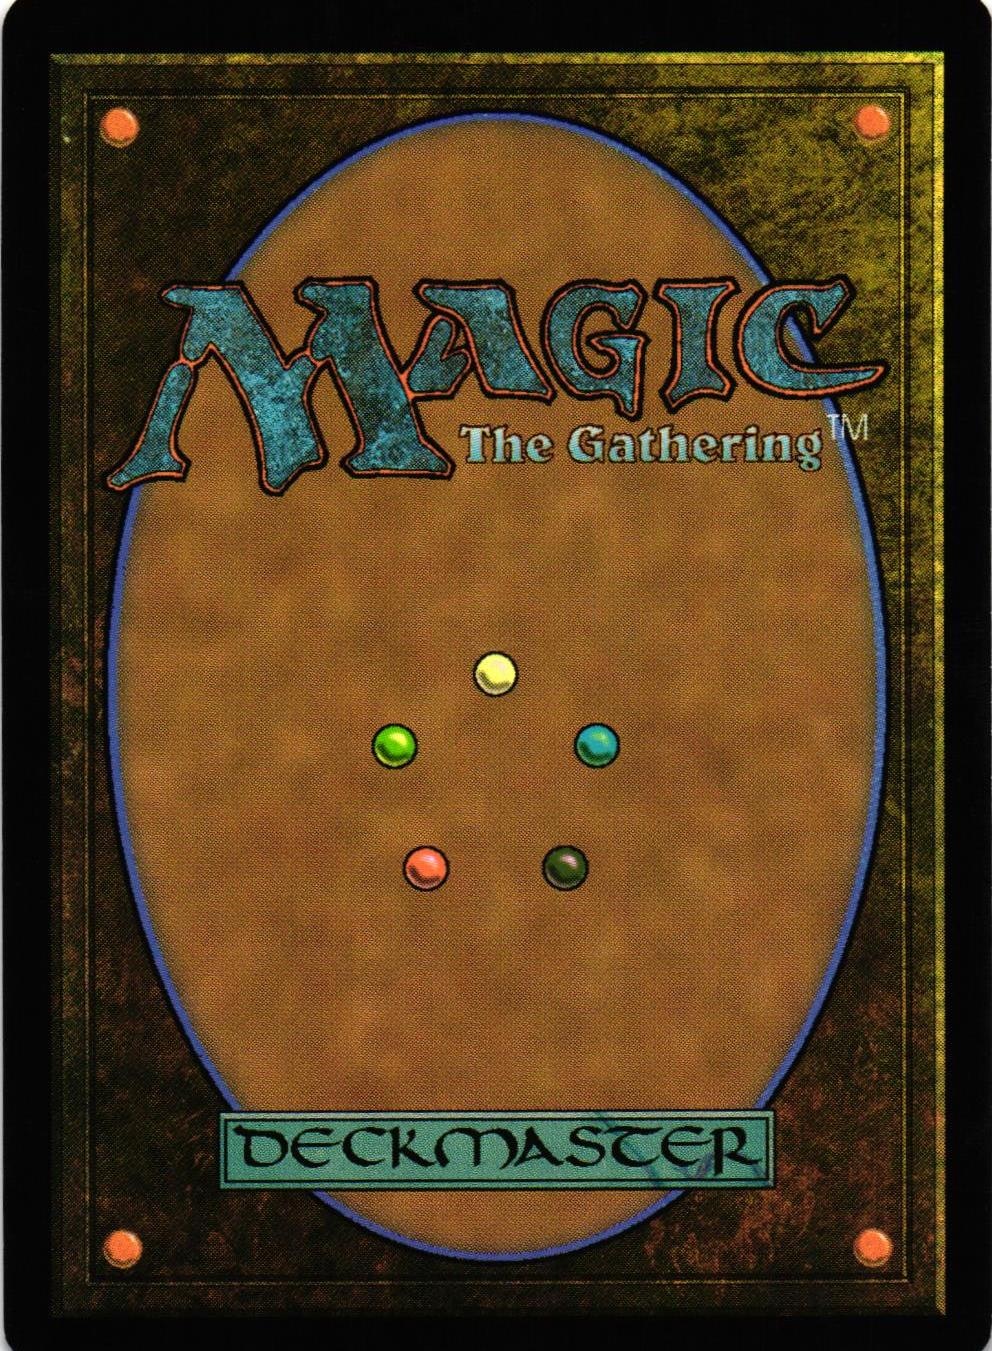 Generator Servant Common 143/269 Magic 2015 (M15) Magic the Gathering